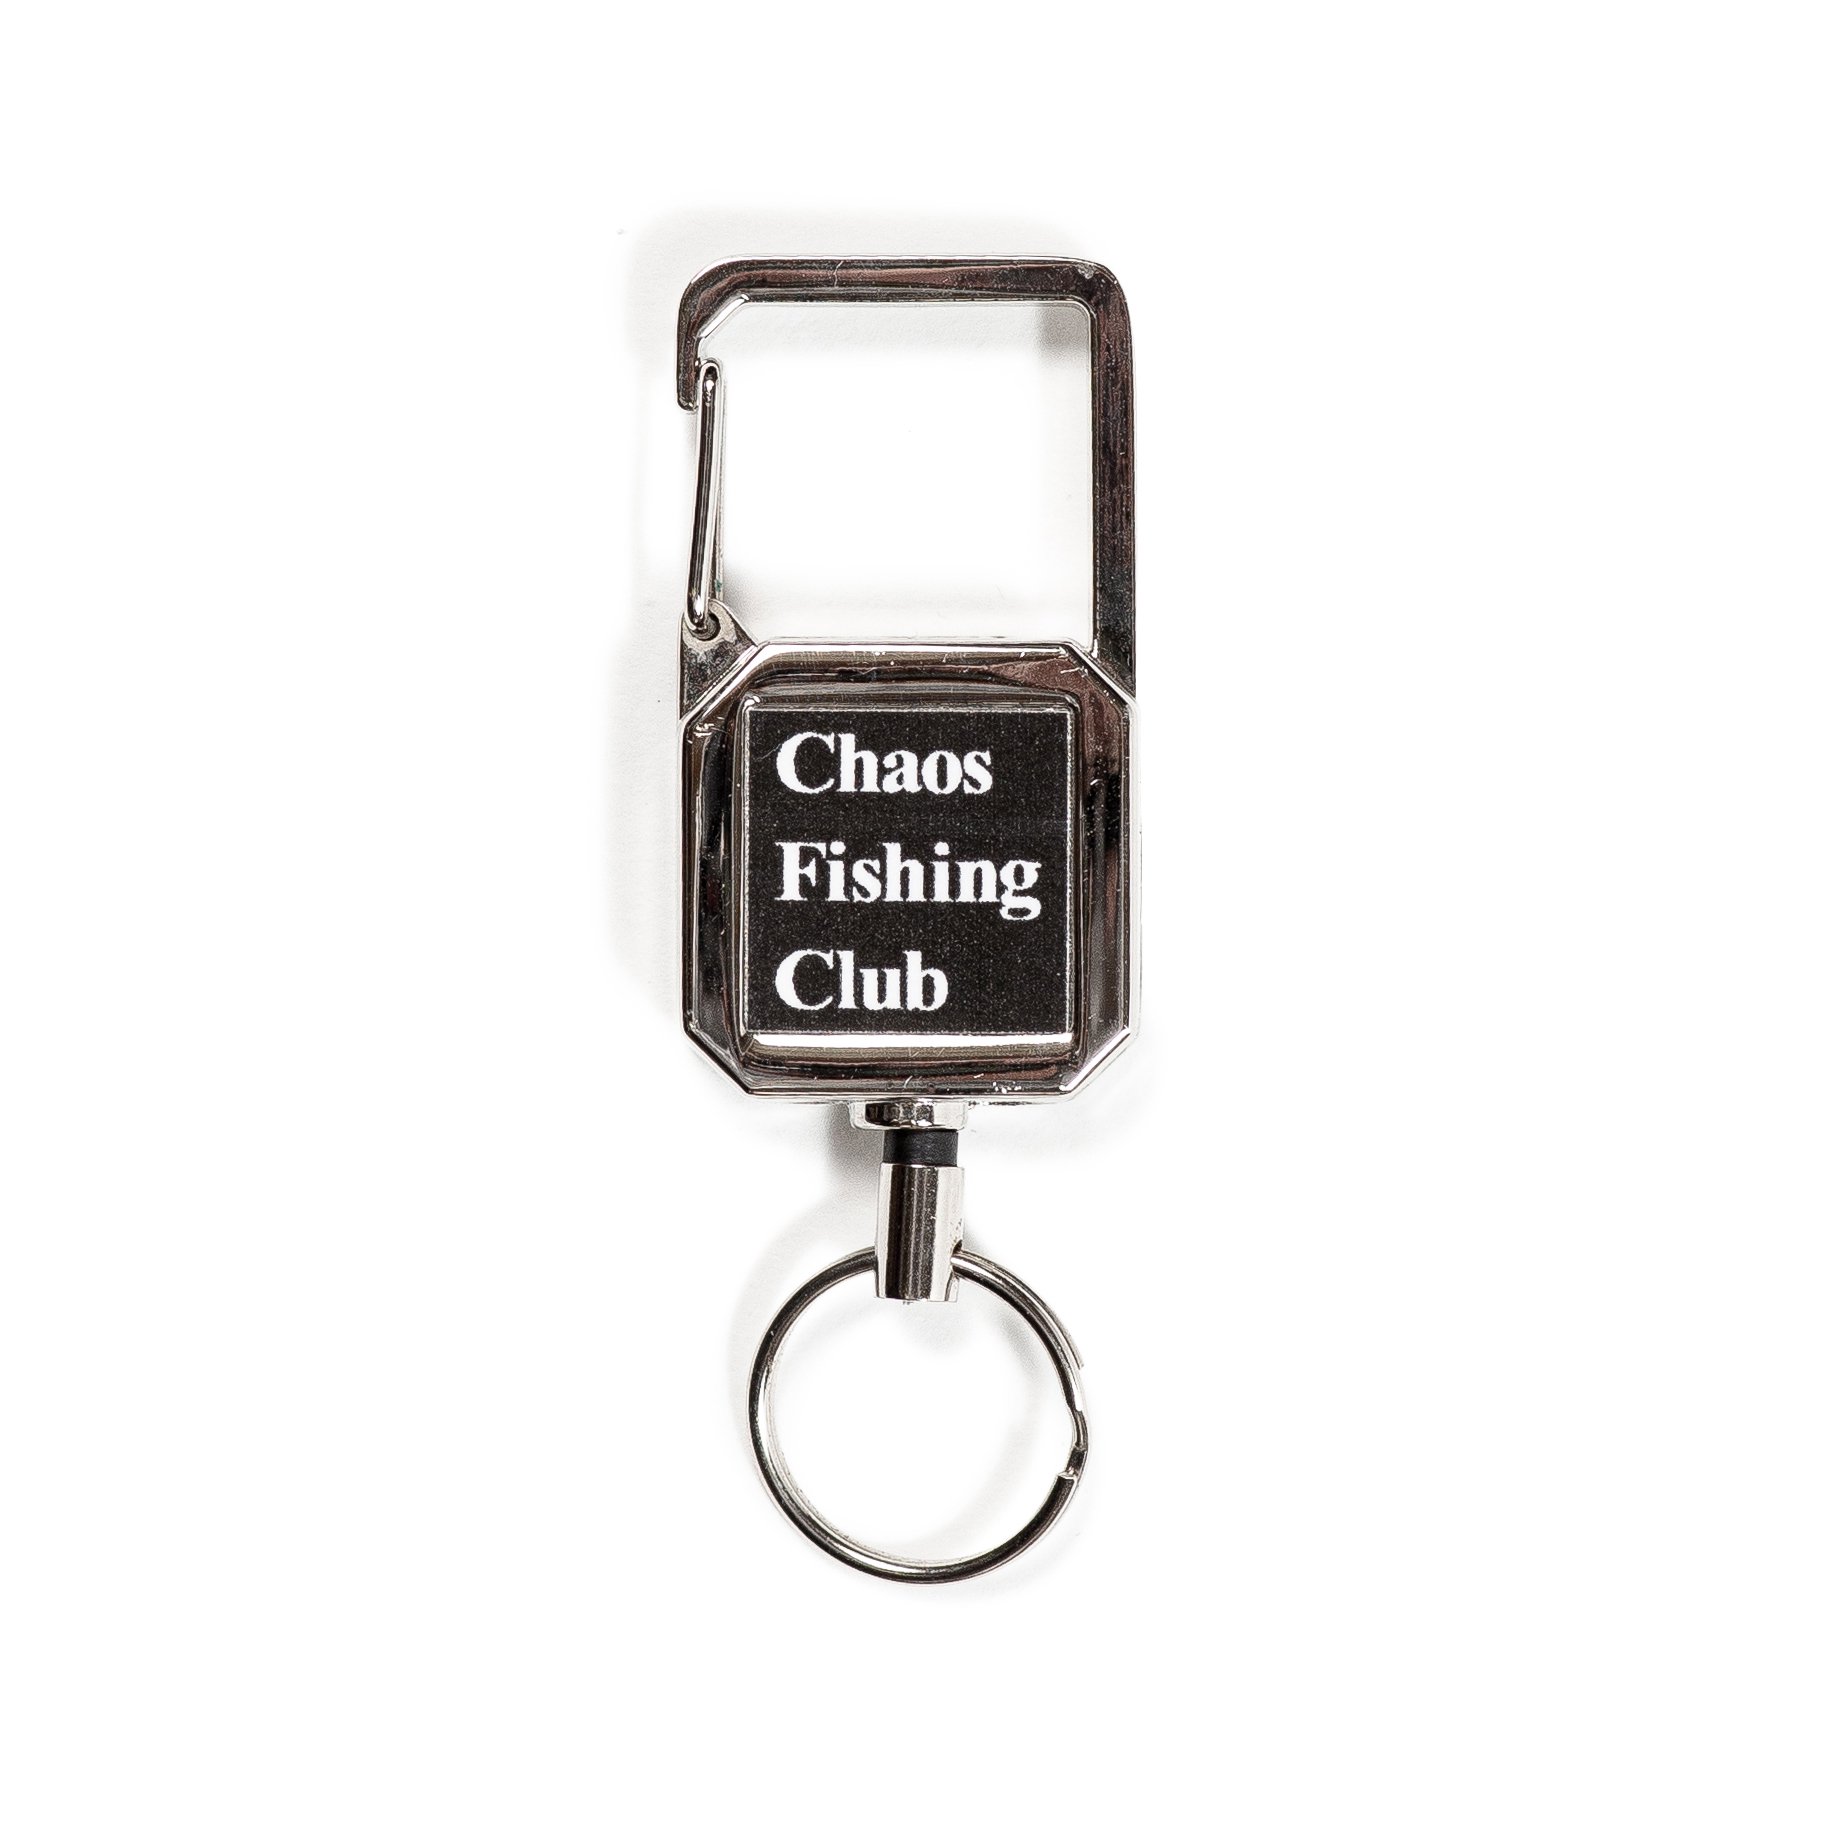 Chaos Fishing Club<br>REEL KEY RING<br>